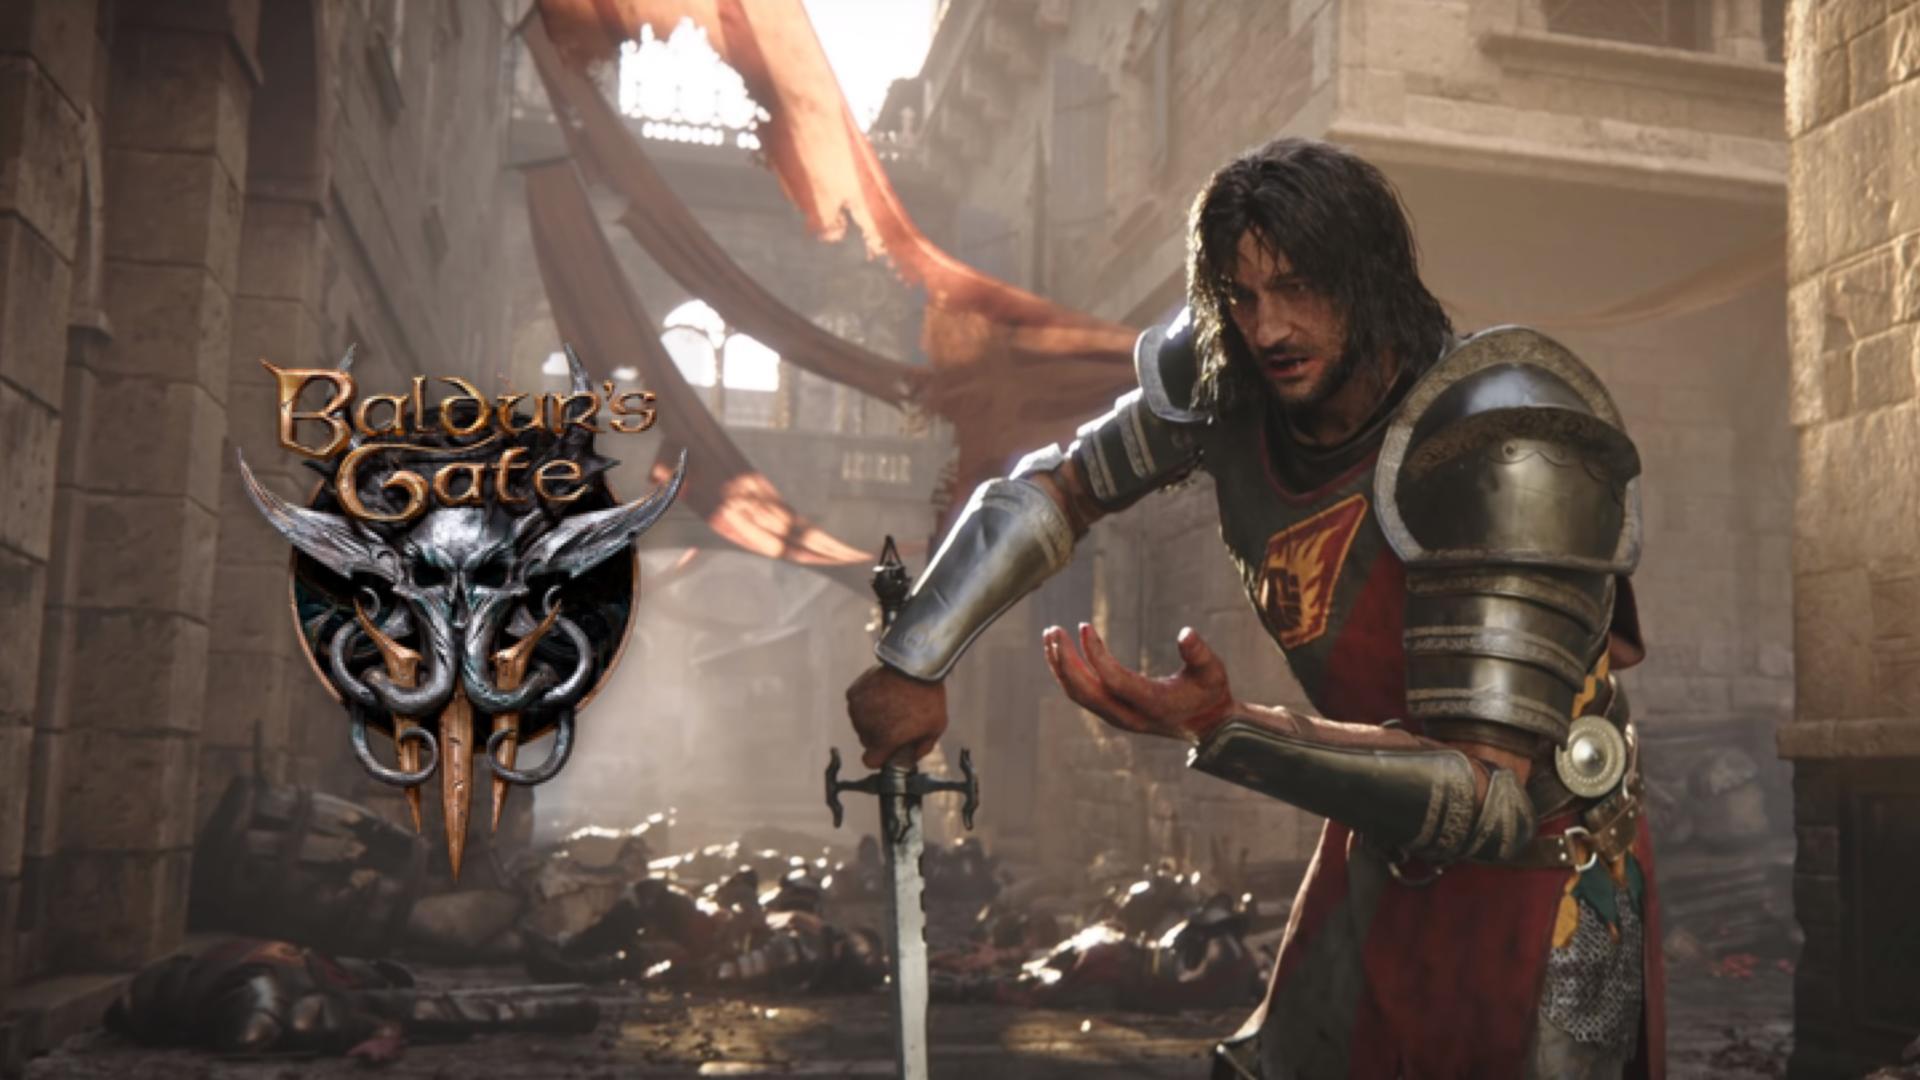 Veja imagens do game 'Baldur's Gate 3', um dos maiores lançamentos